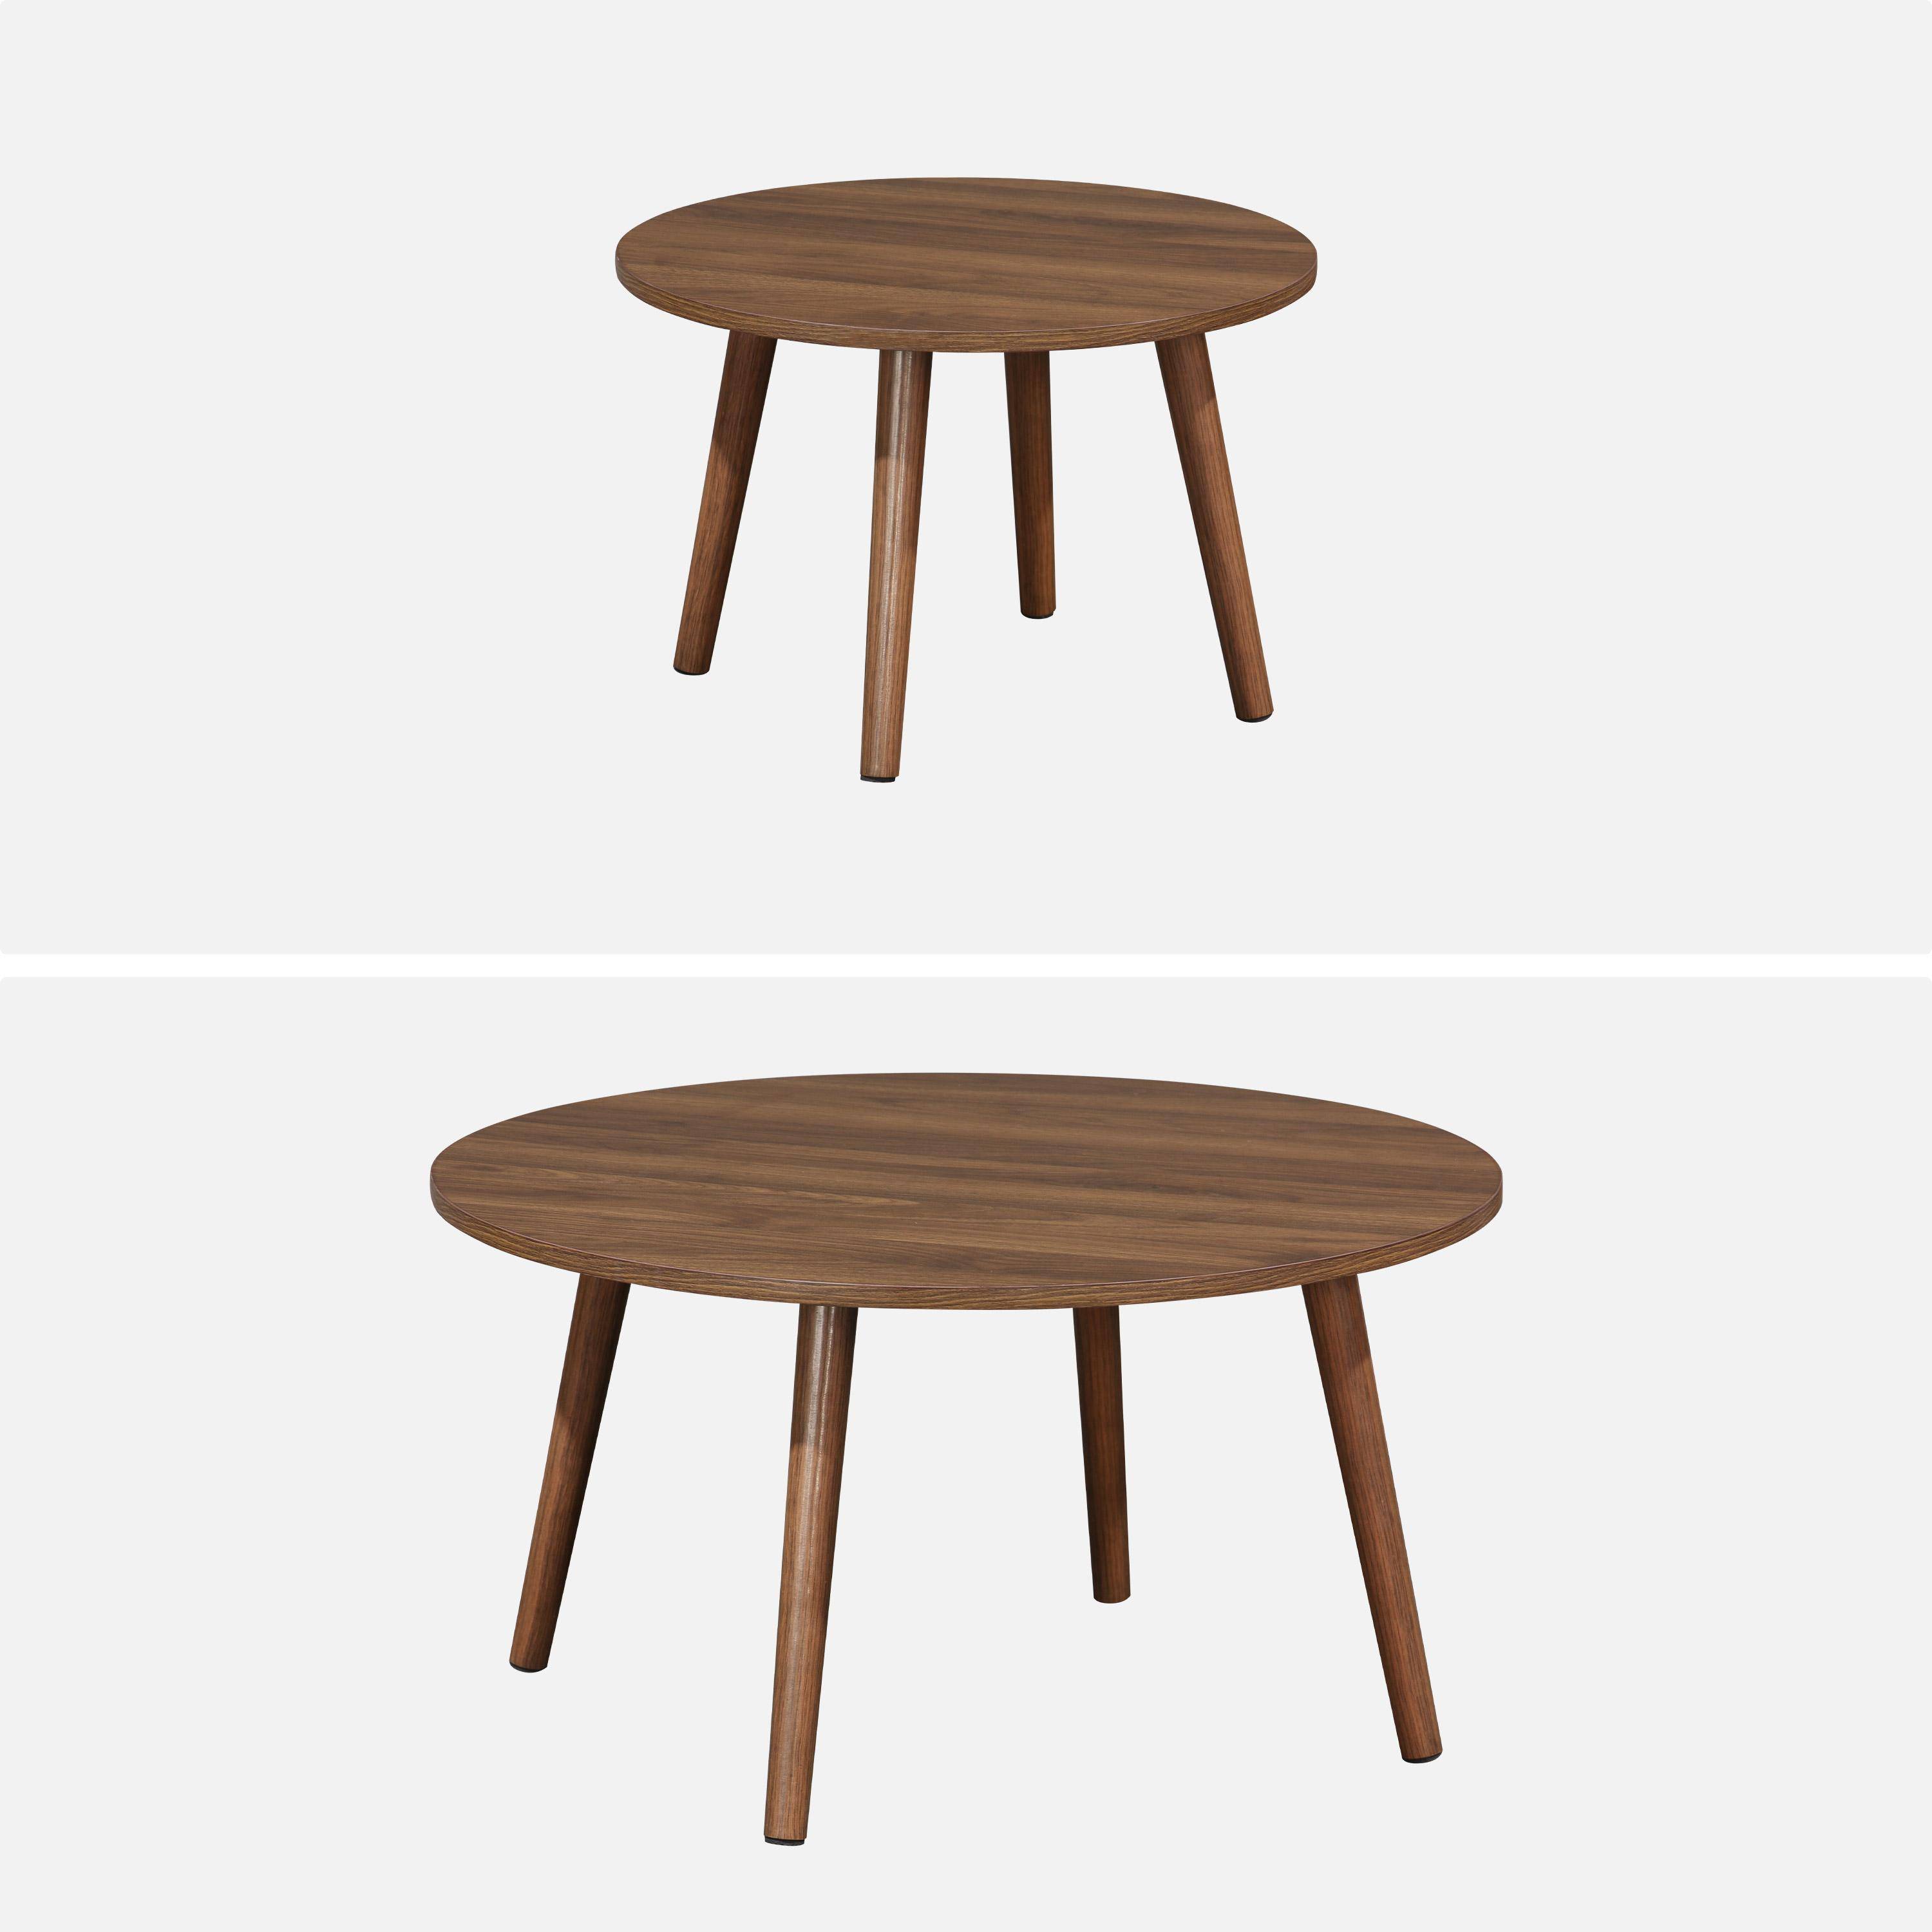 Pair of walnut wood-effect nesting coffee tables, 70x70x38cm & 50x50x34cm, Nepal Photo6